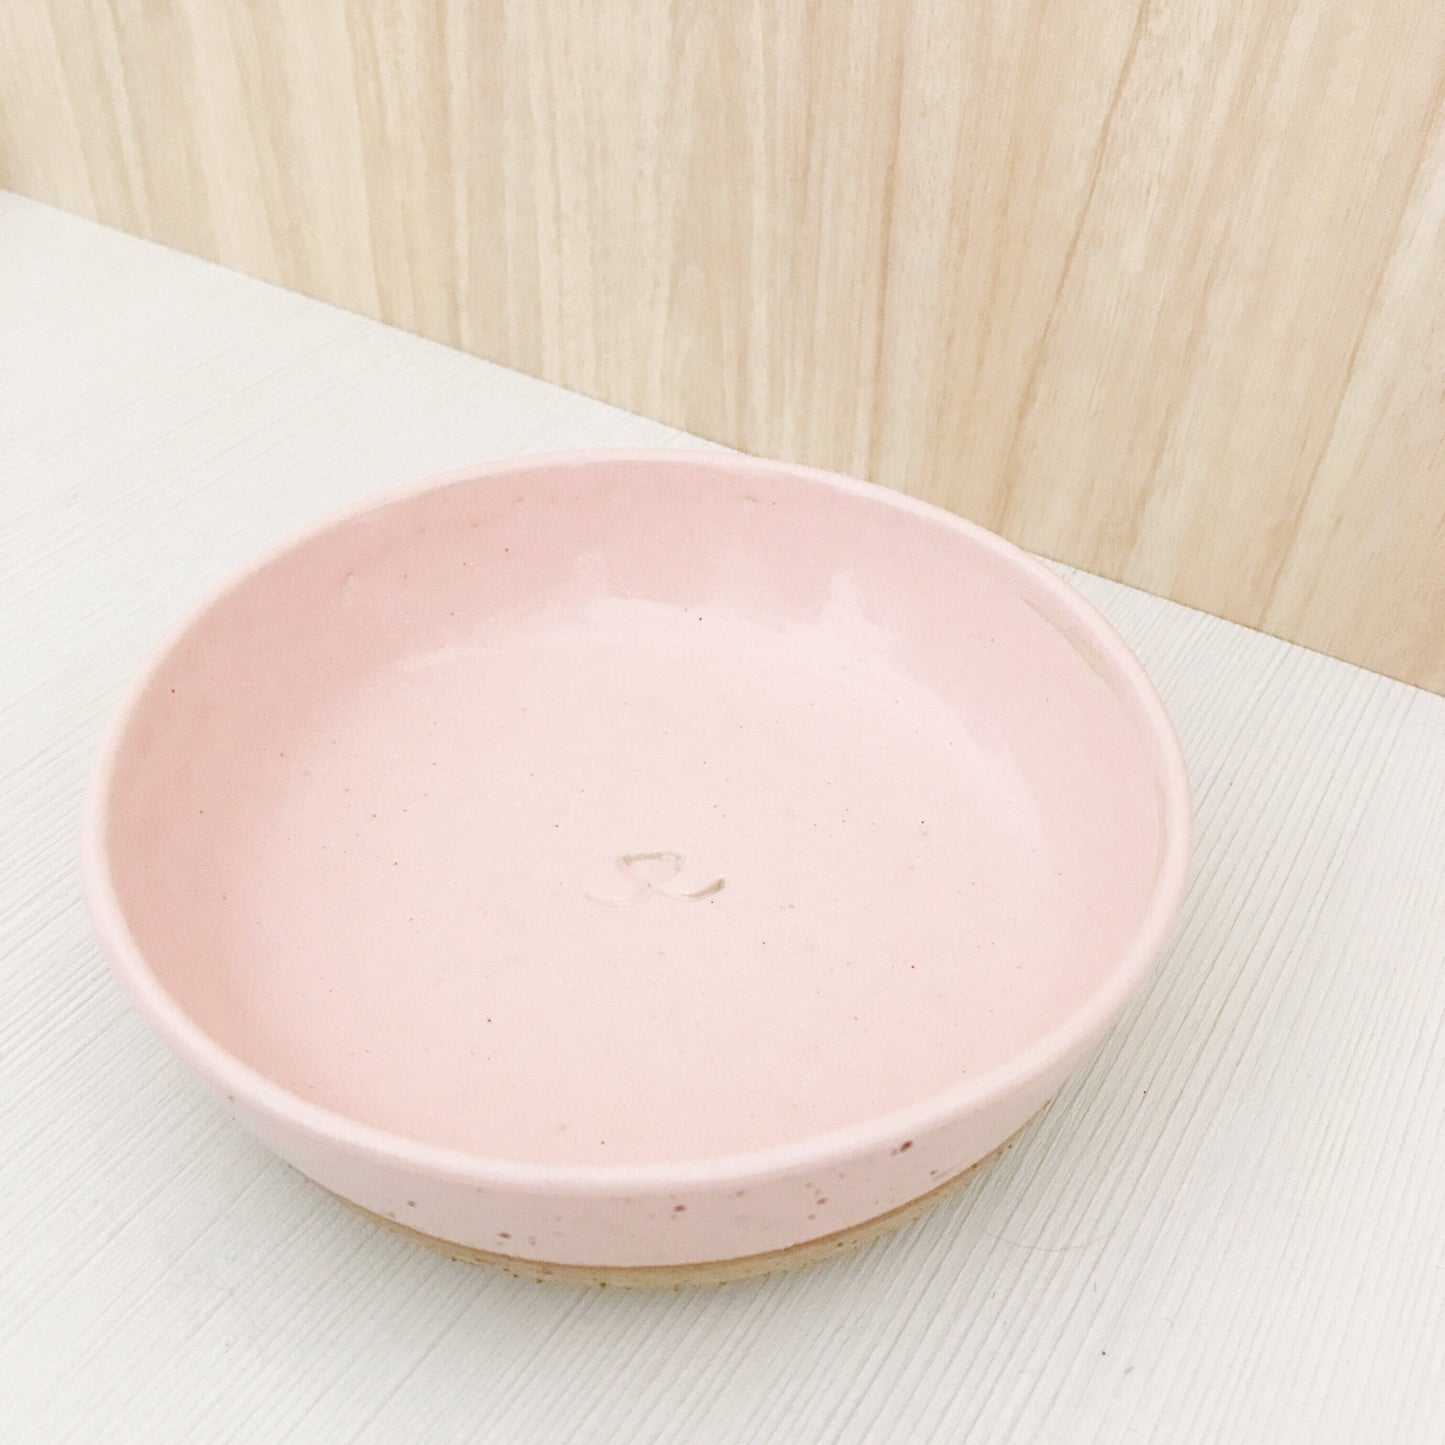 Handmade Ceramic Pet Bowls